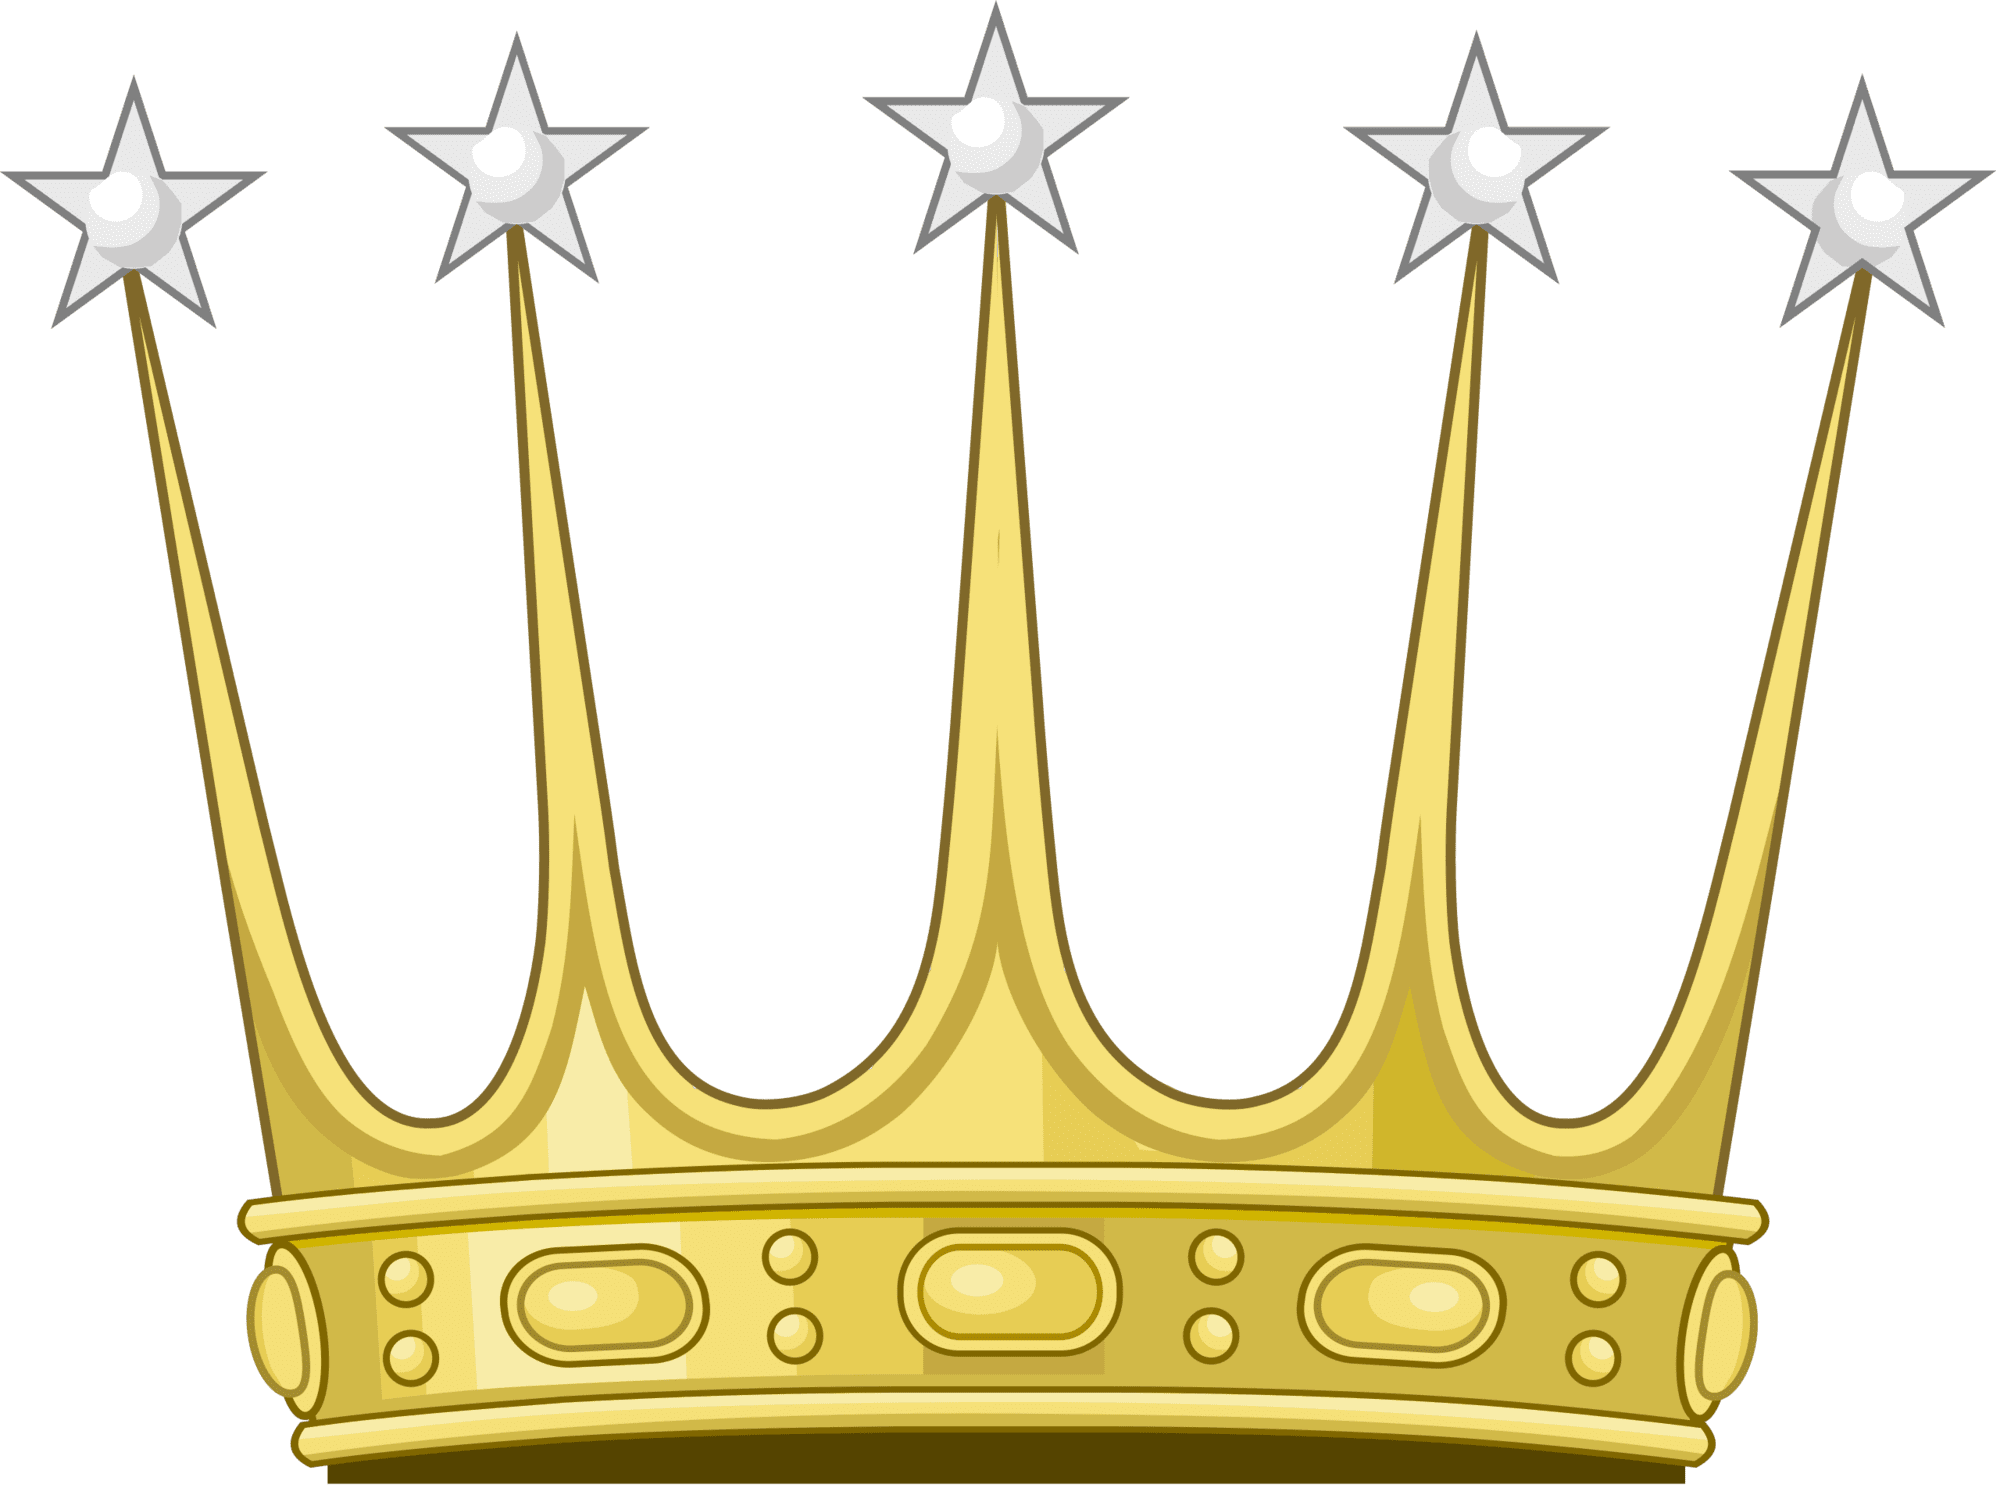 Queen crown celestial clipart transparent